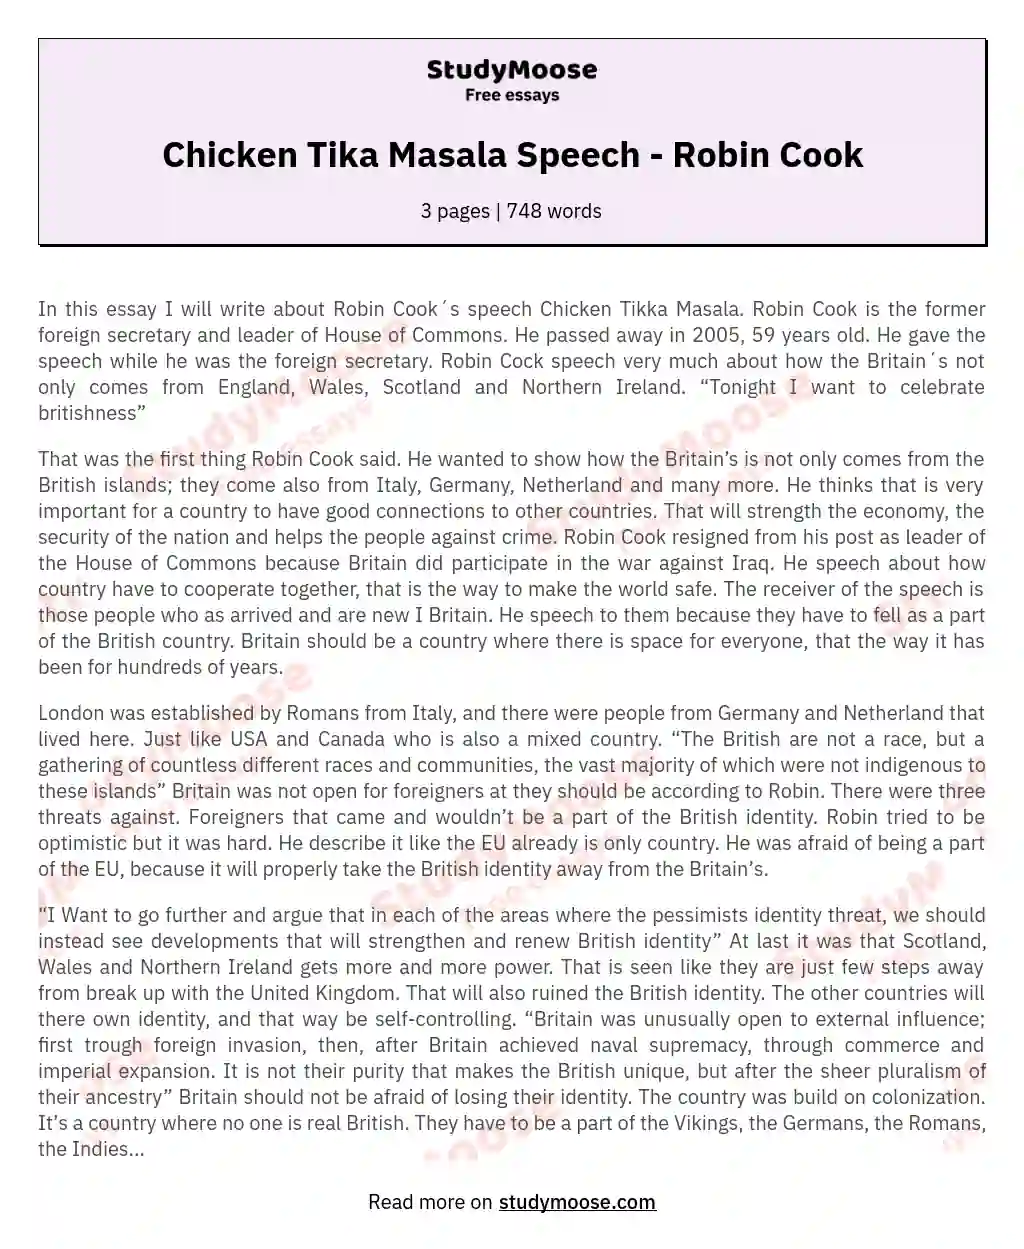 Chicken Tika Masala Speech - Robin Cook essay